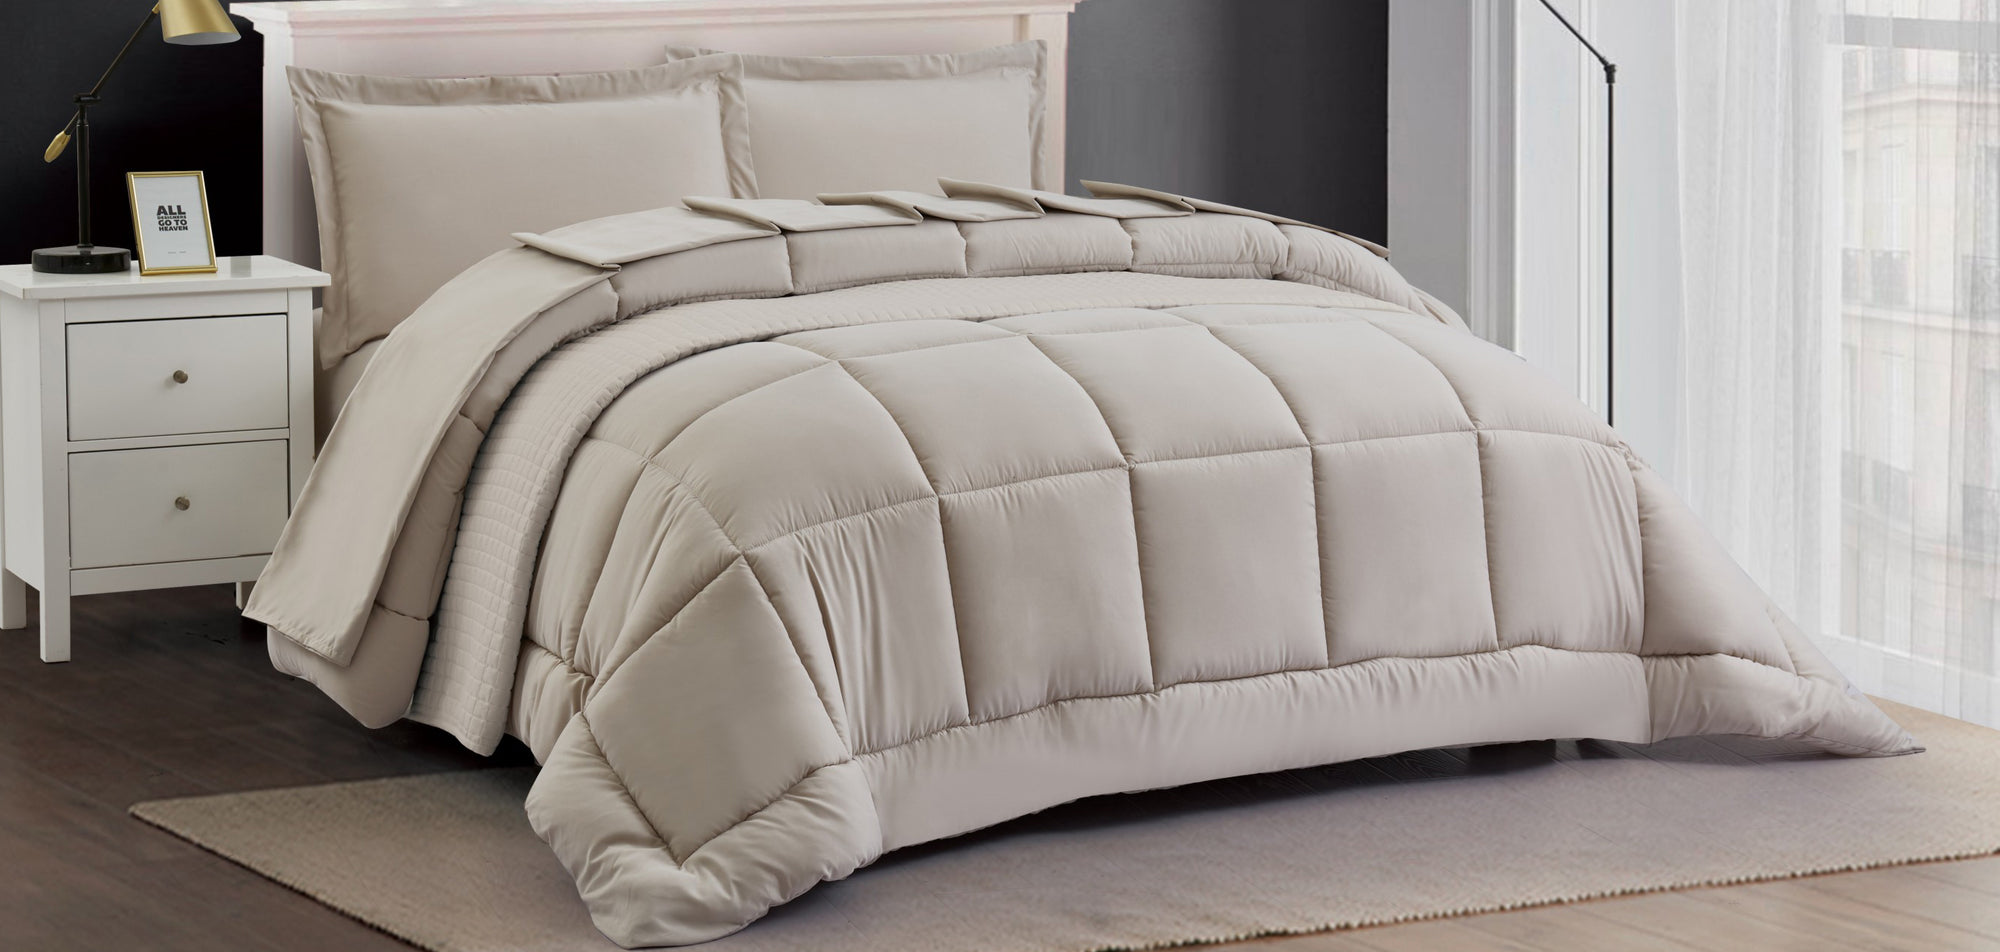 Florenzia bed set in linen colour